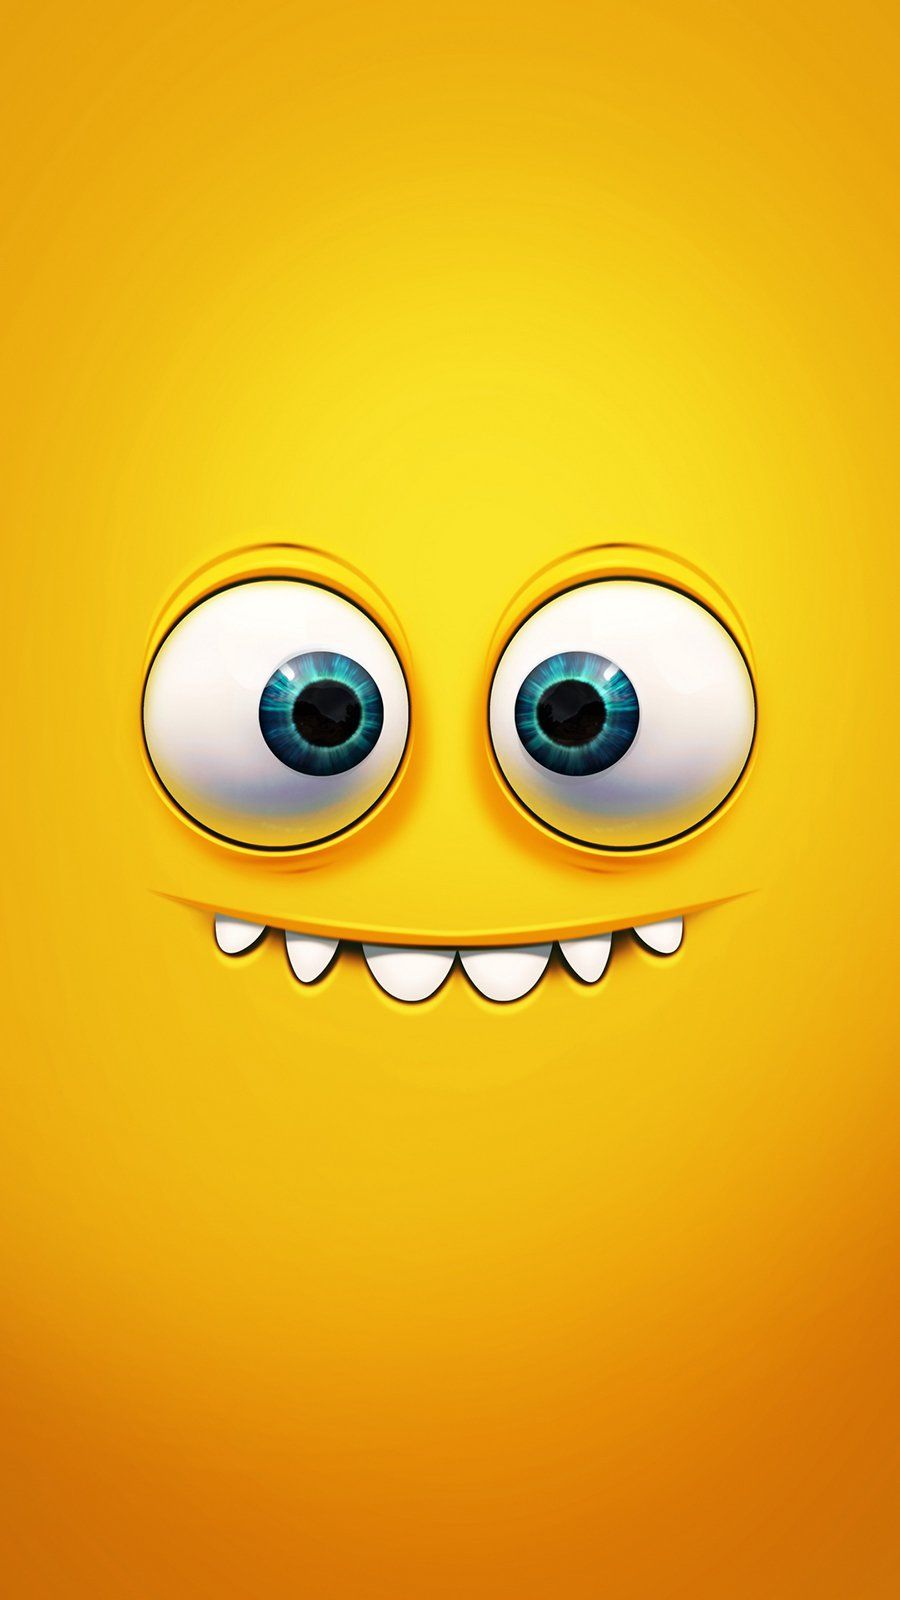 Emoji aesthetic Wallpaper Download